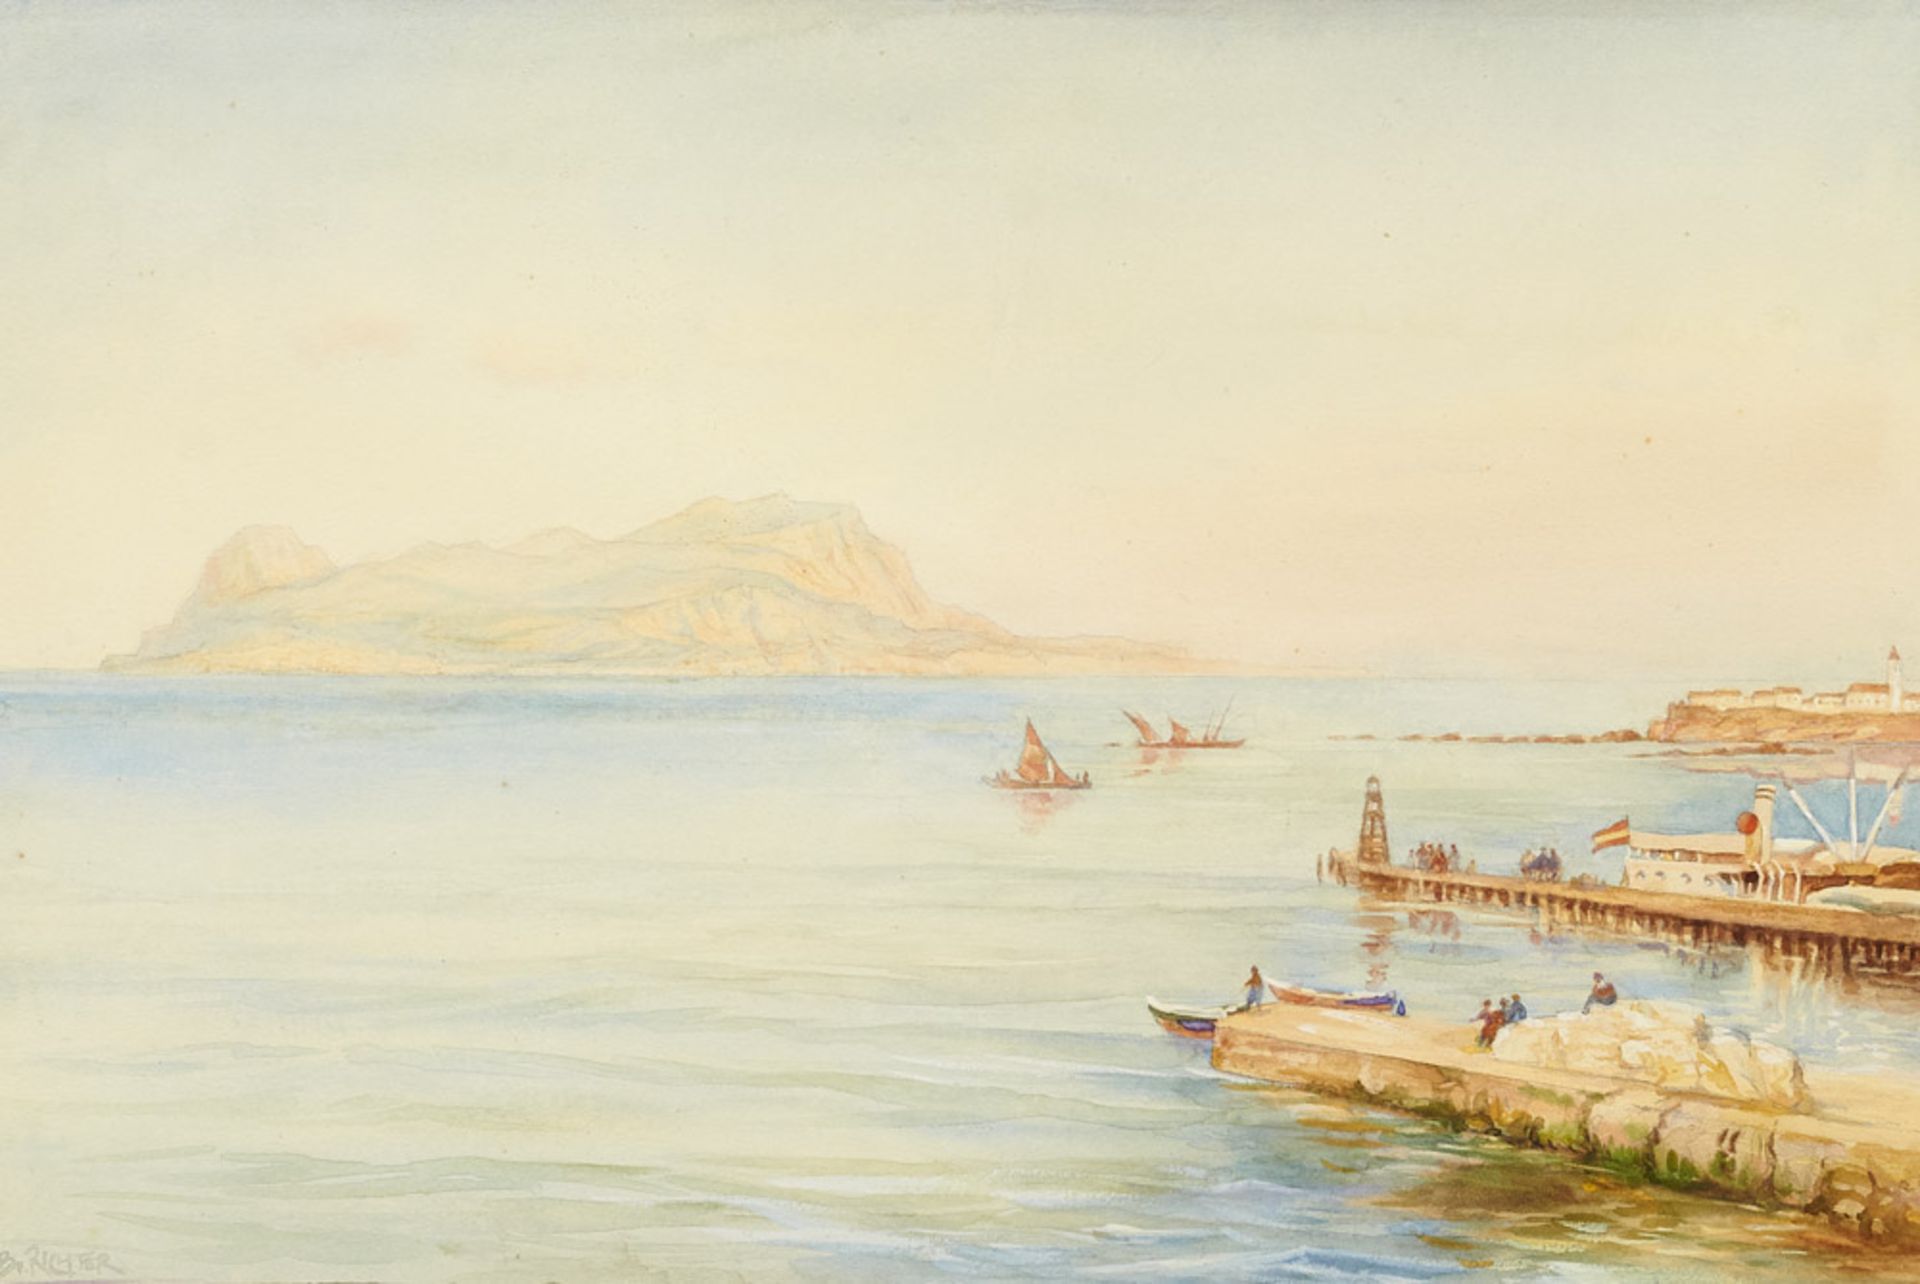 Bruno Richter (1872 Halle - ?)Blick von Algeciras auf Gibraltar. Aquarell übee